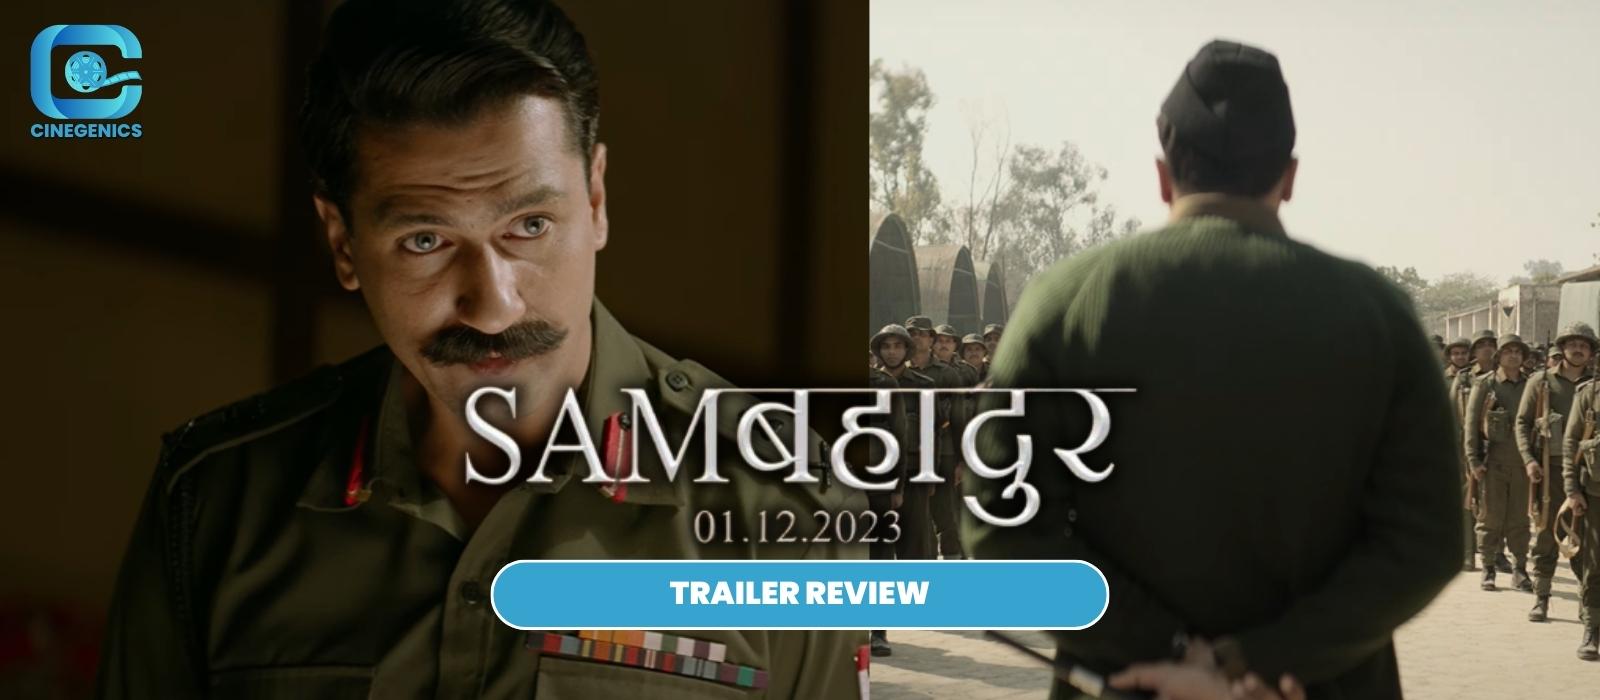 sam bahadur trailer review | Movie Review Blogs